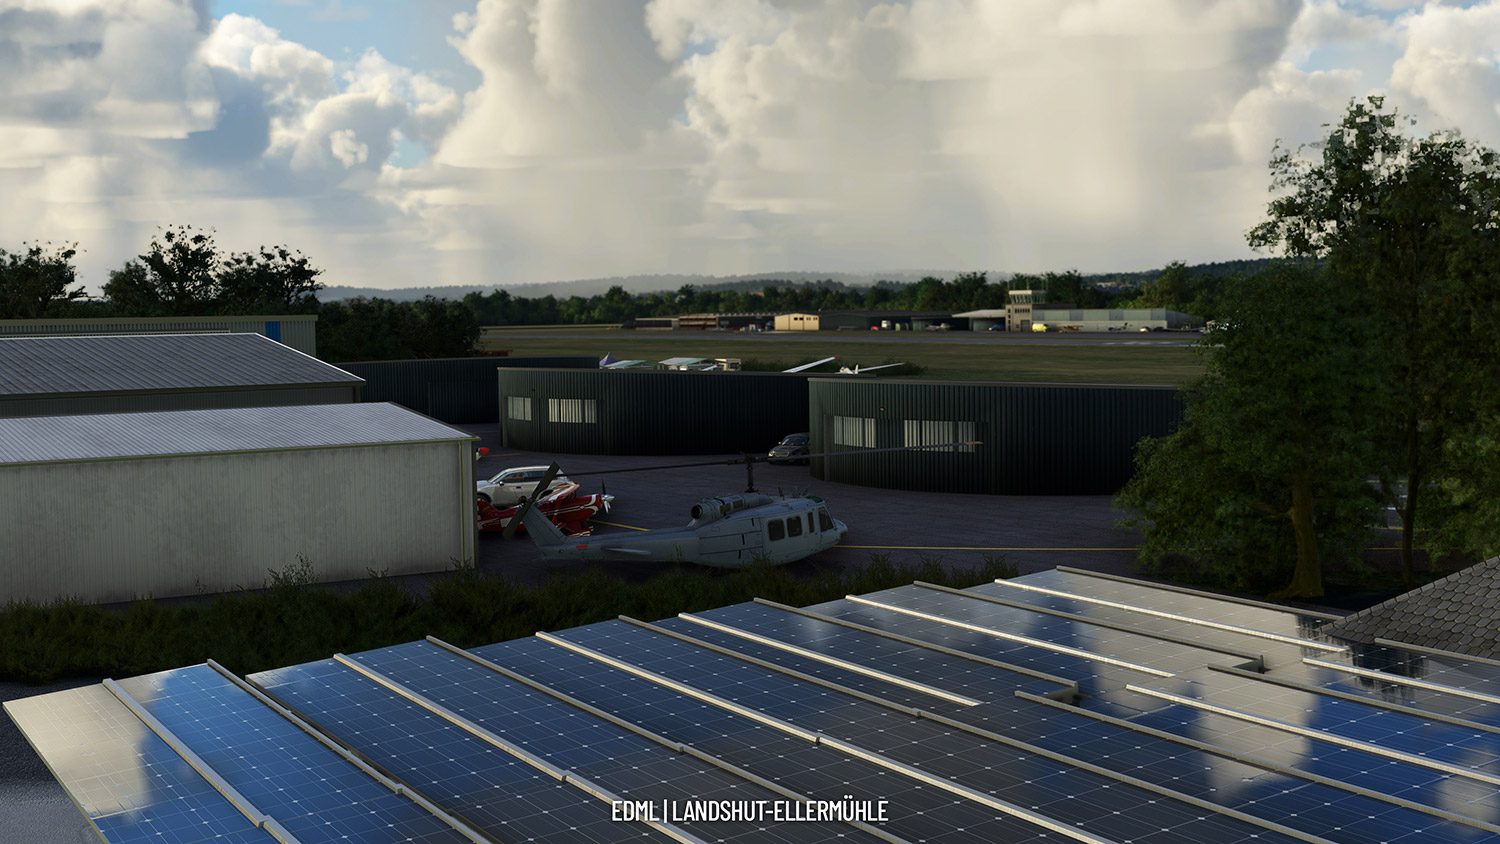 Aerosoft Airfield Landshut - EDML